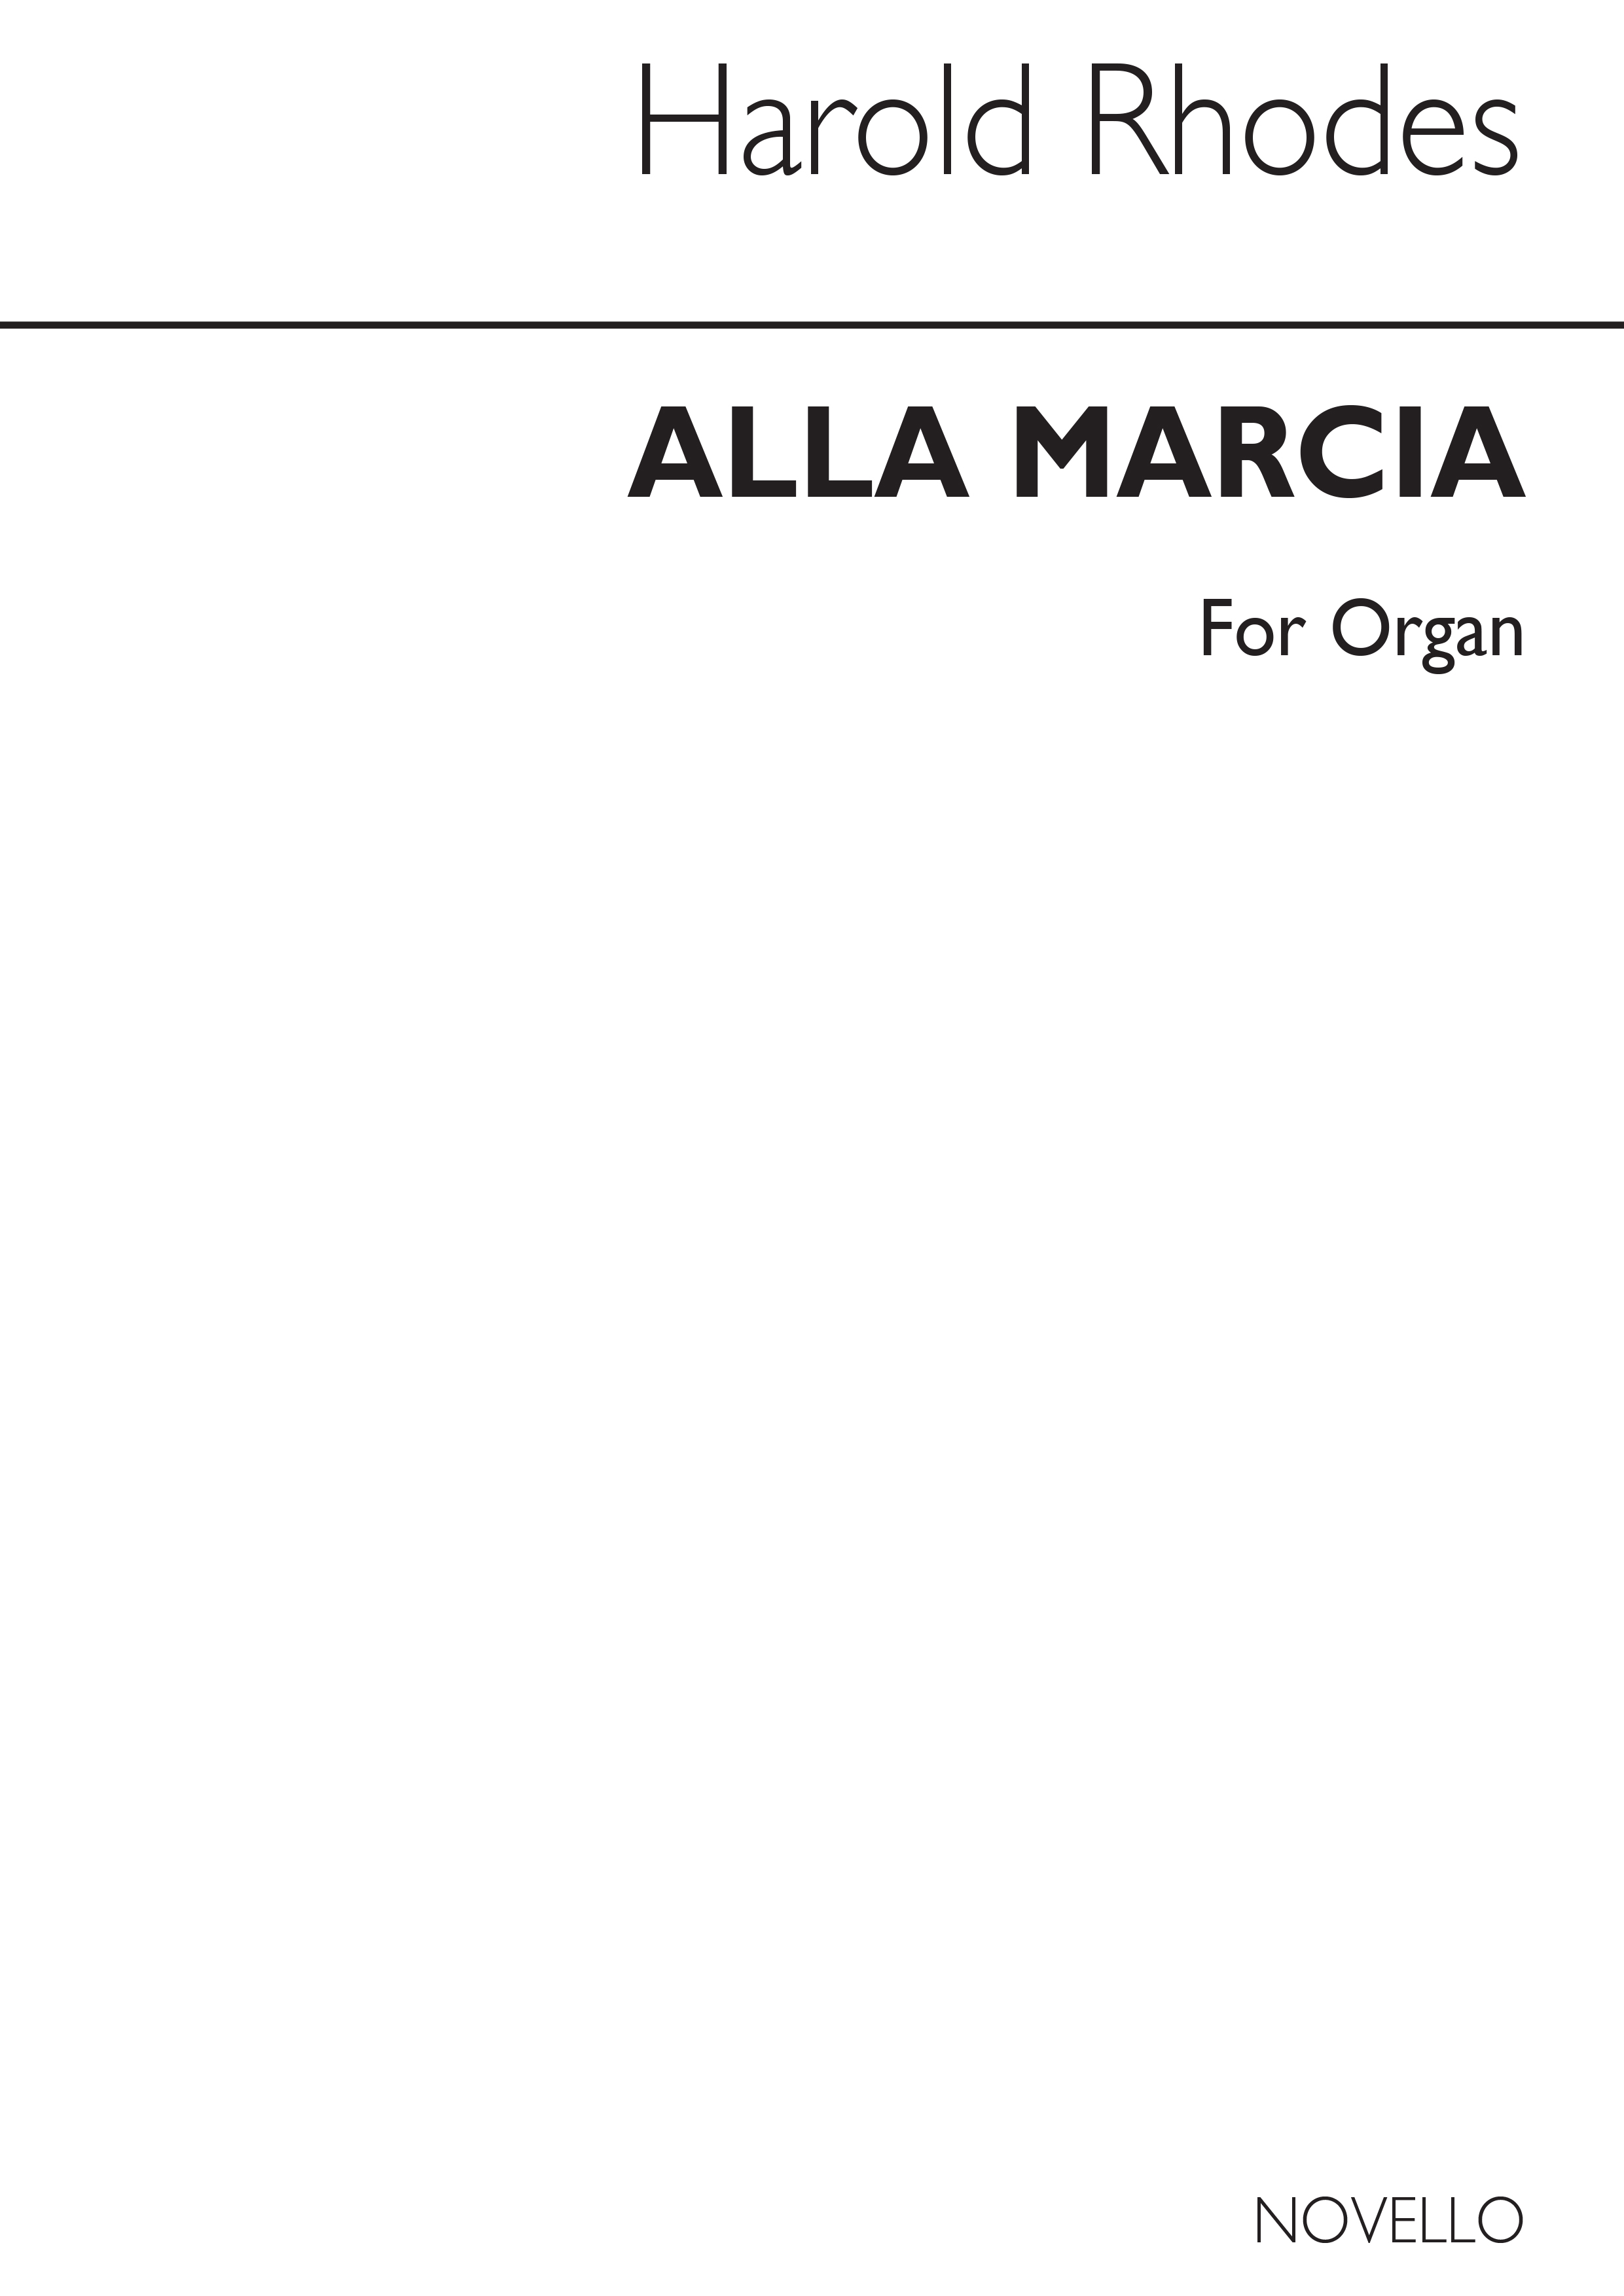 Harold Rhodes: Alla Marcia Organ